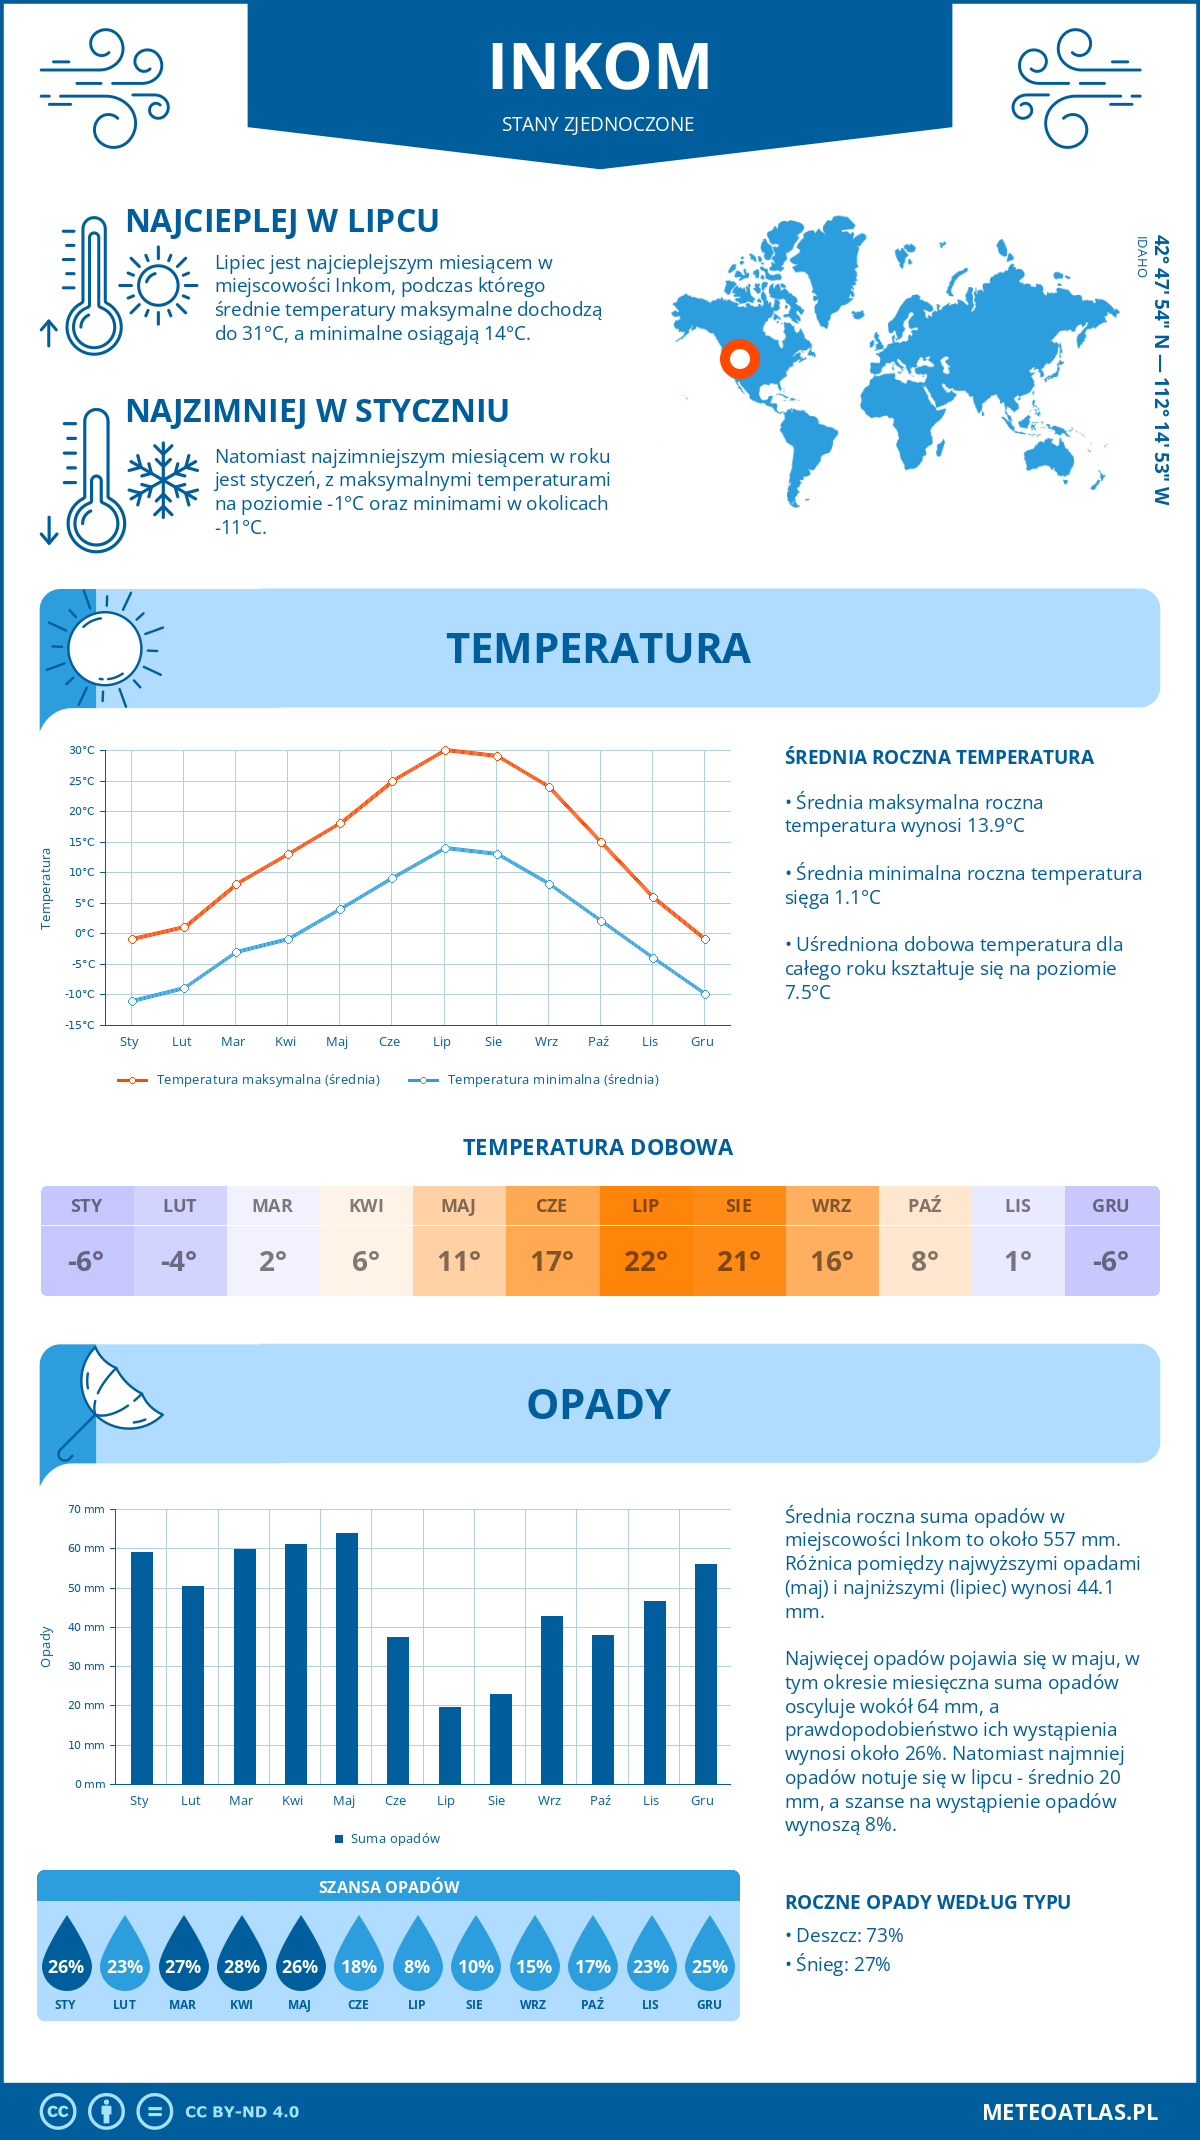 Pogoda Inkom (Stany Zjednoczone). Temperatura oraz opady.